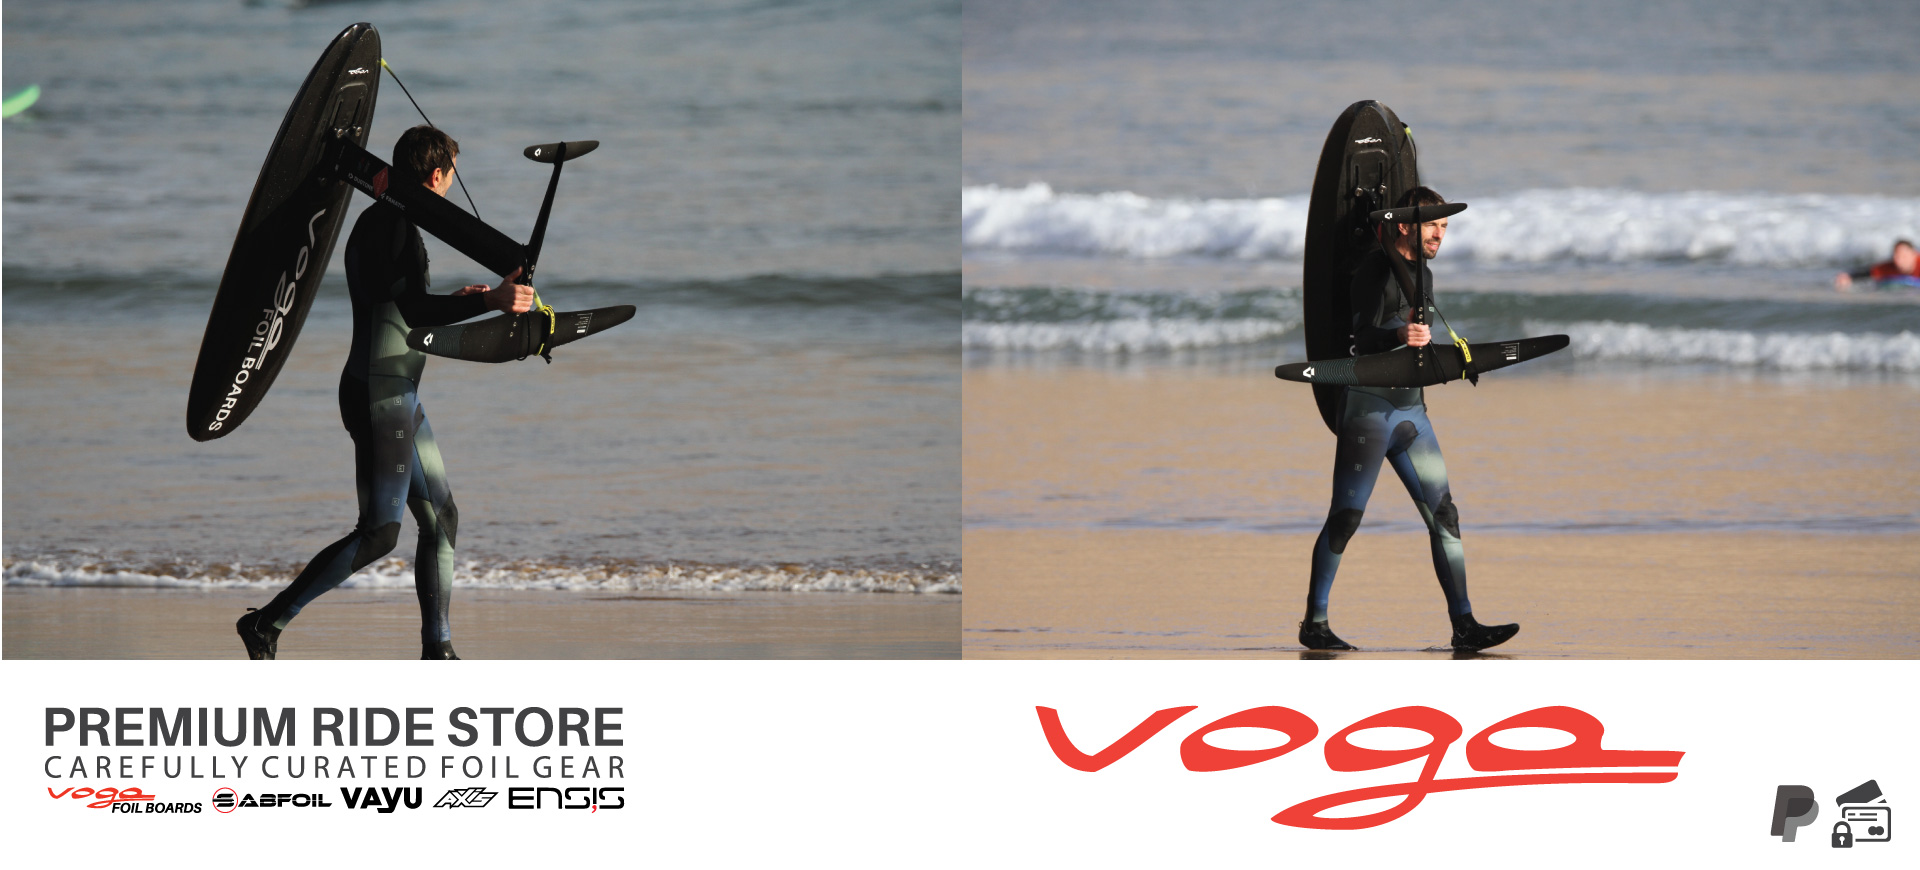 Voga Premium Ride Store custom surf foil boards